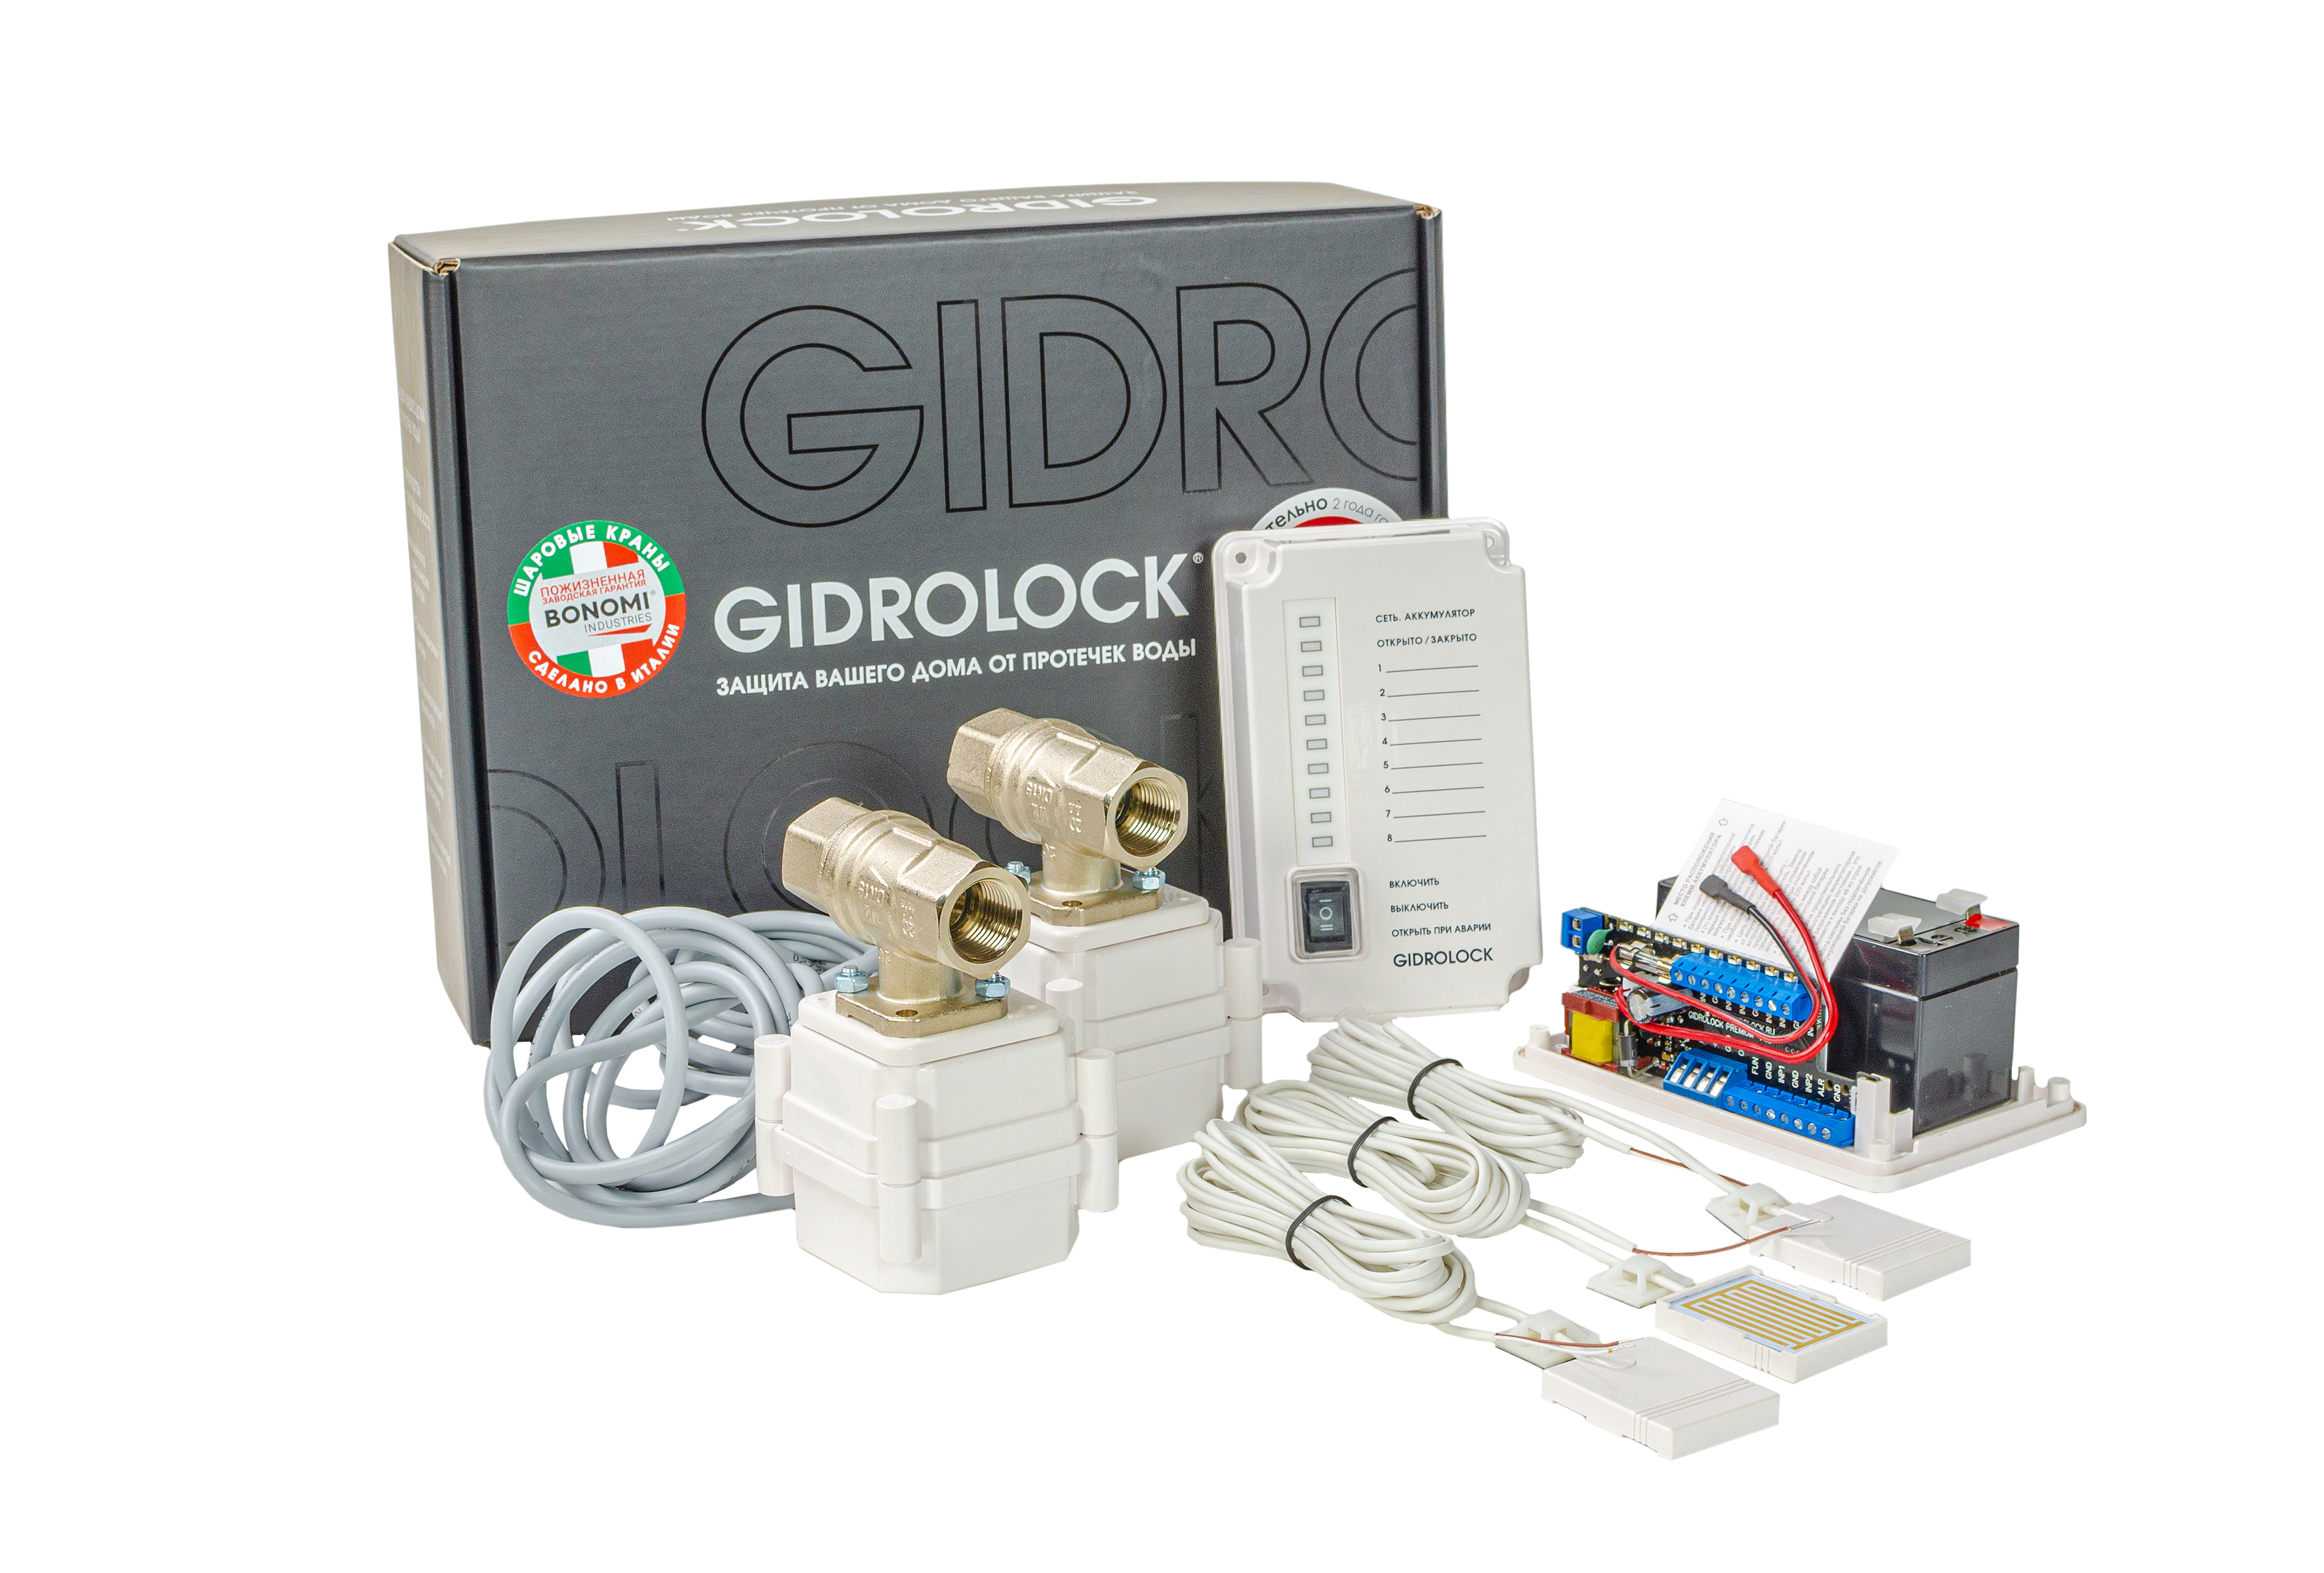 GIDROLOCK-SHOP-официальный сайт GIDROLOCK системы защиты от протечек воды.